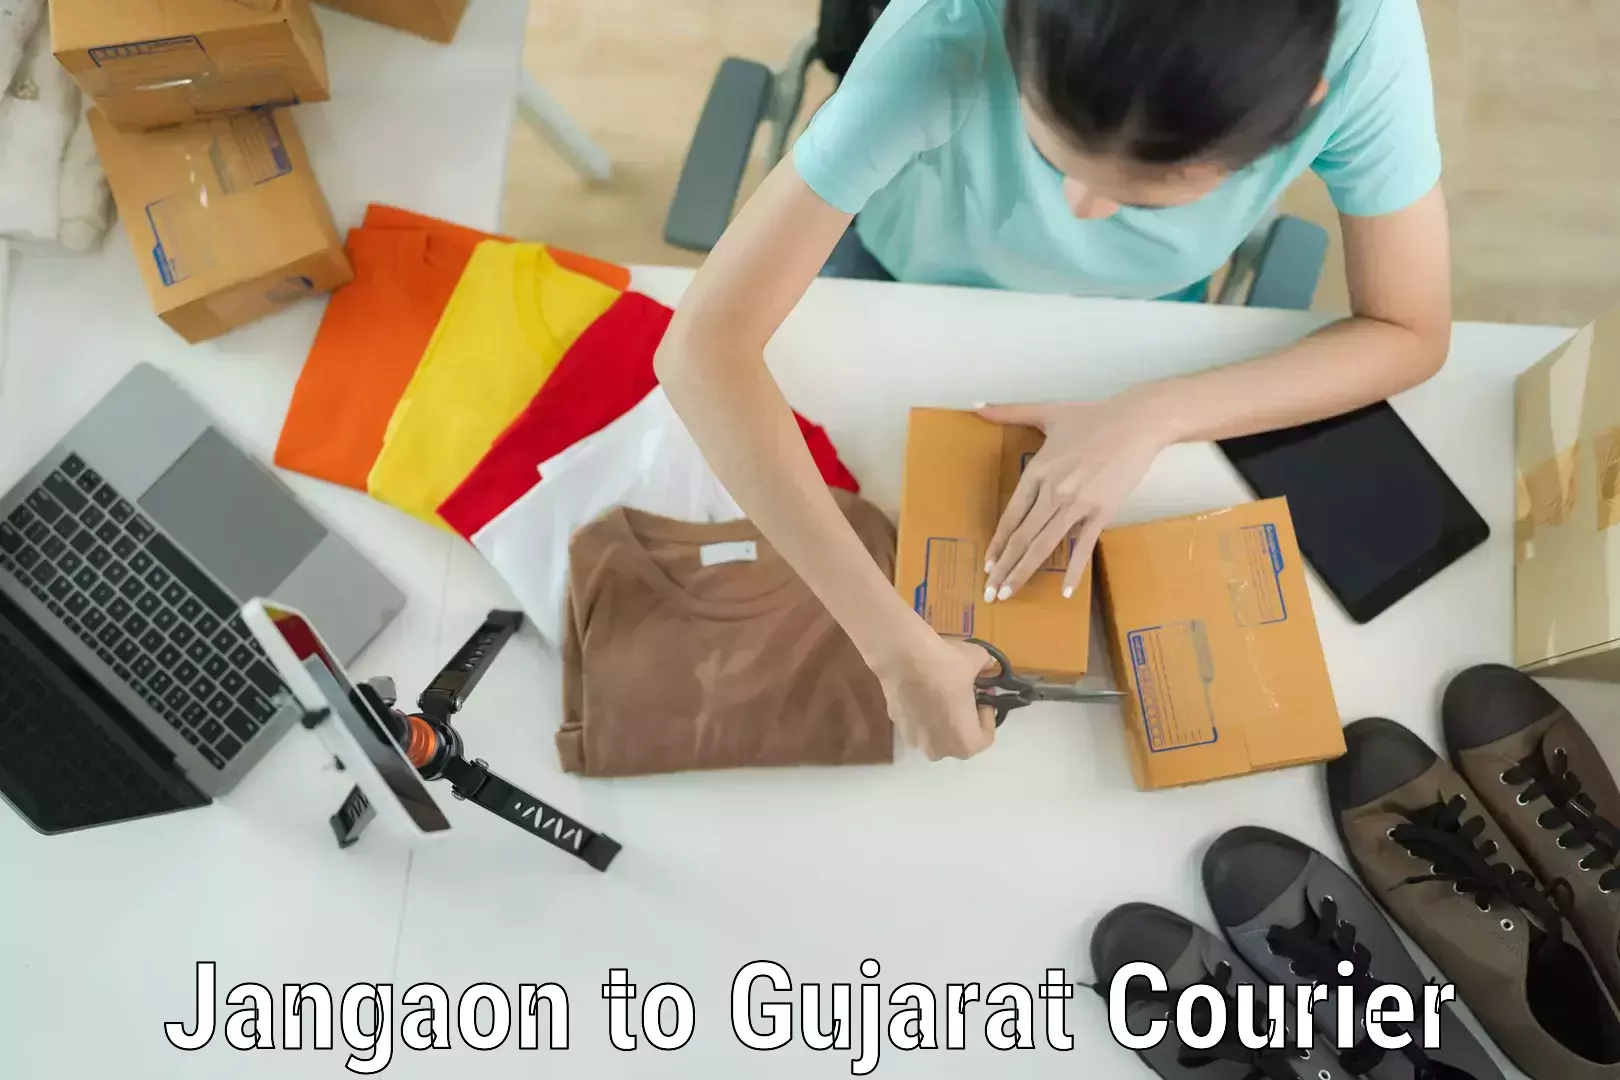 Door-to-door baggage service Jangaon to Gujarat